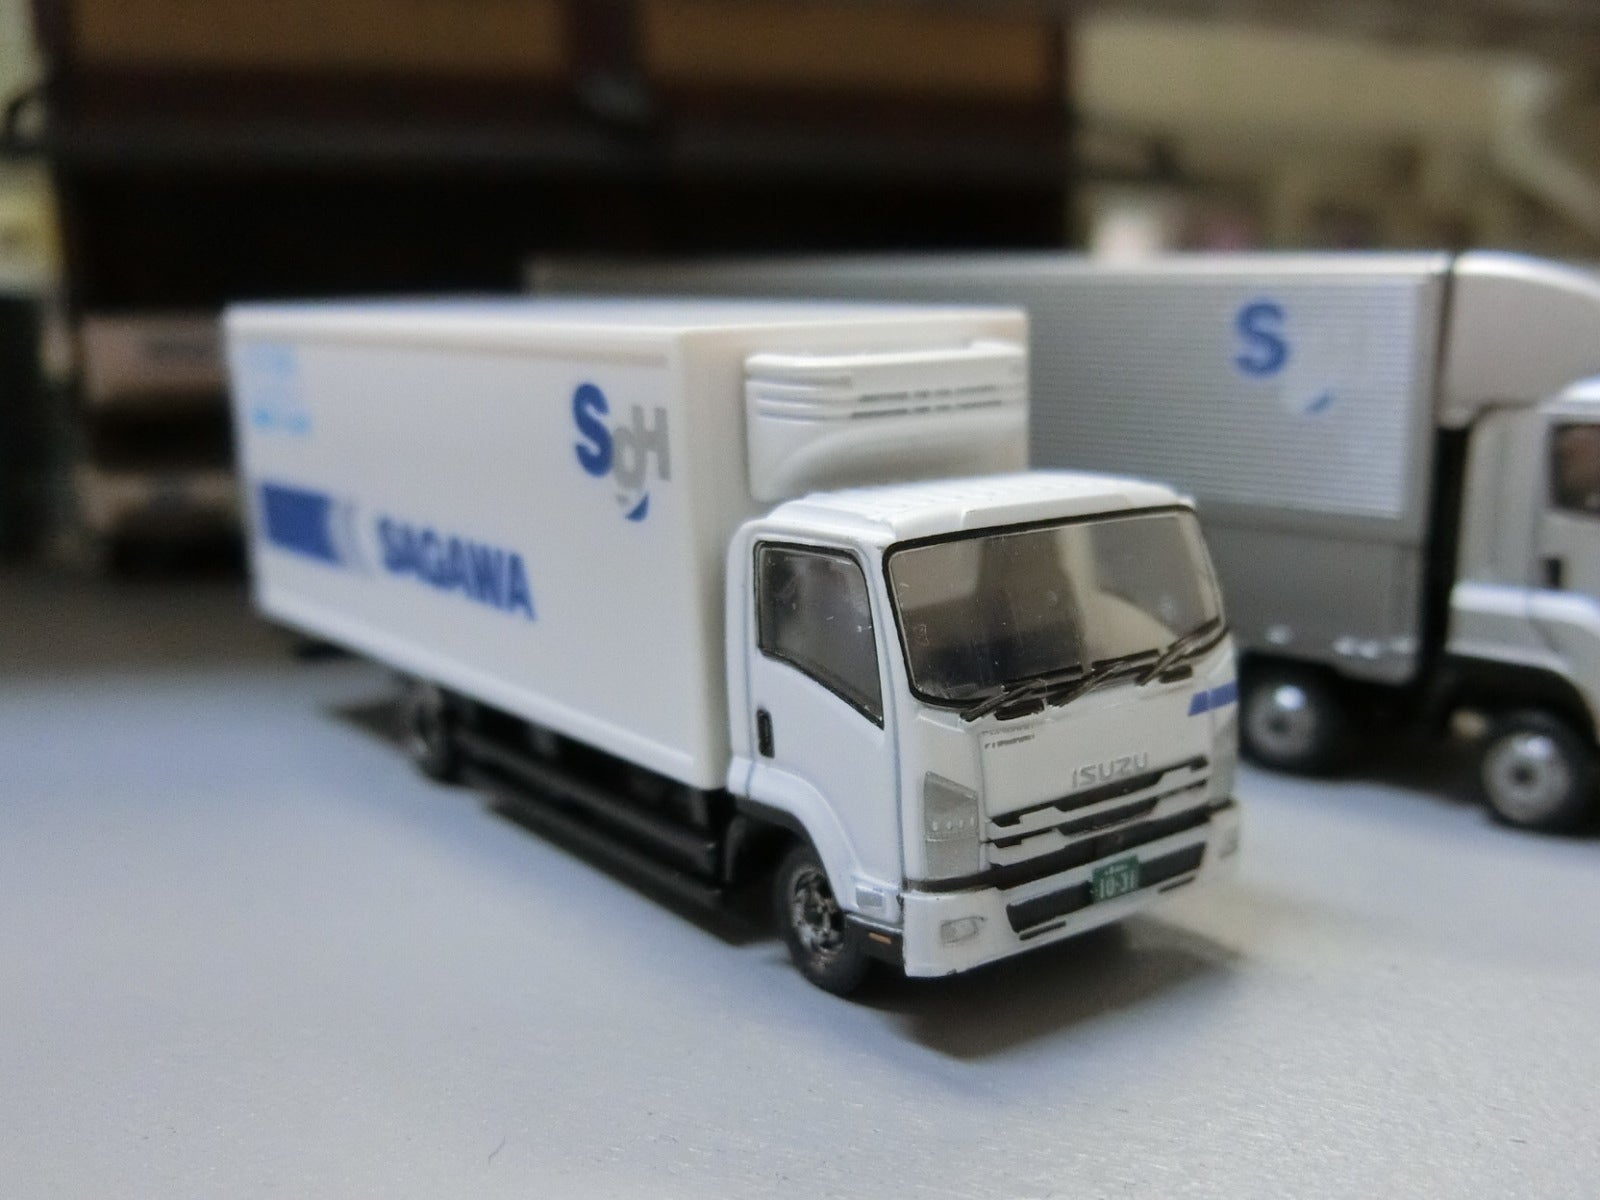 トラックコレクション「佐川急便トラックセット」 | きままな鉄道模型